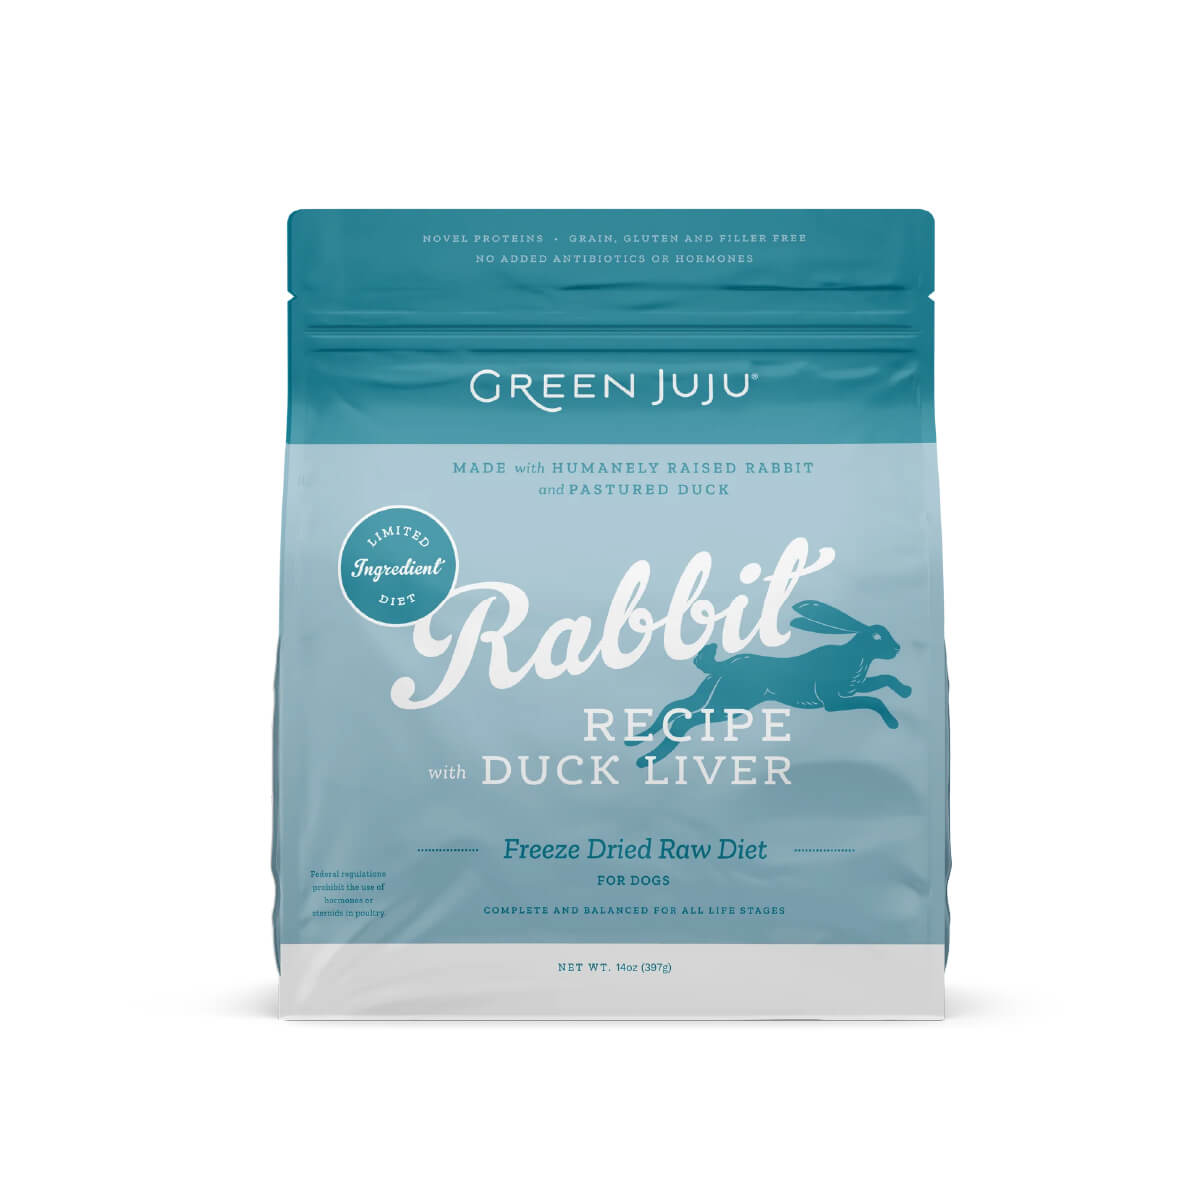 Green Juju Freeze-dried Raw Food | Rabbit & Duck Liver